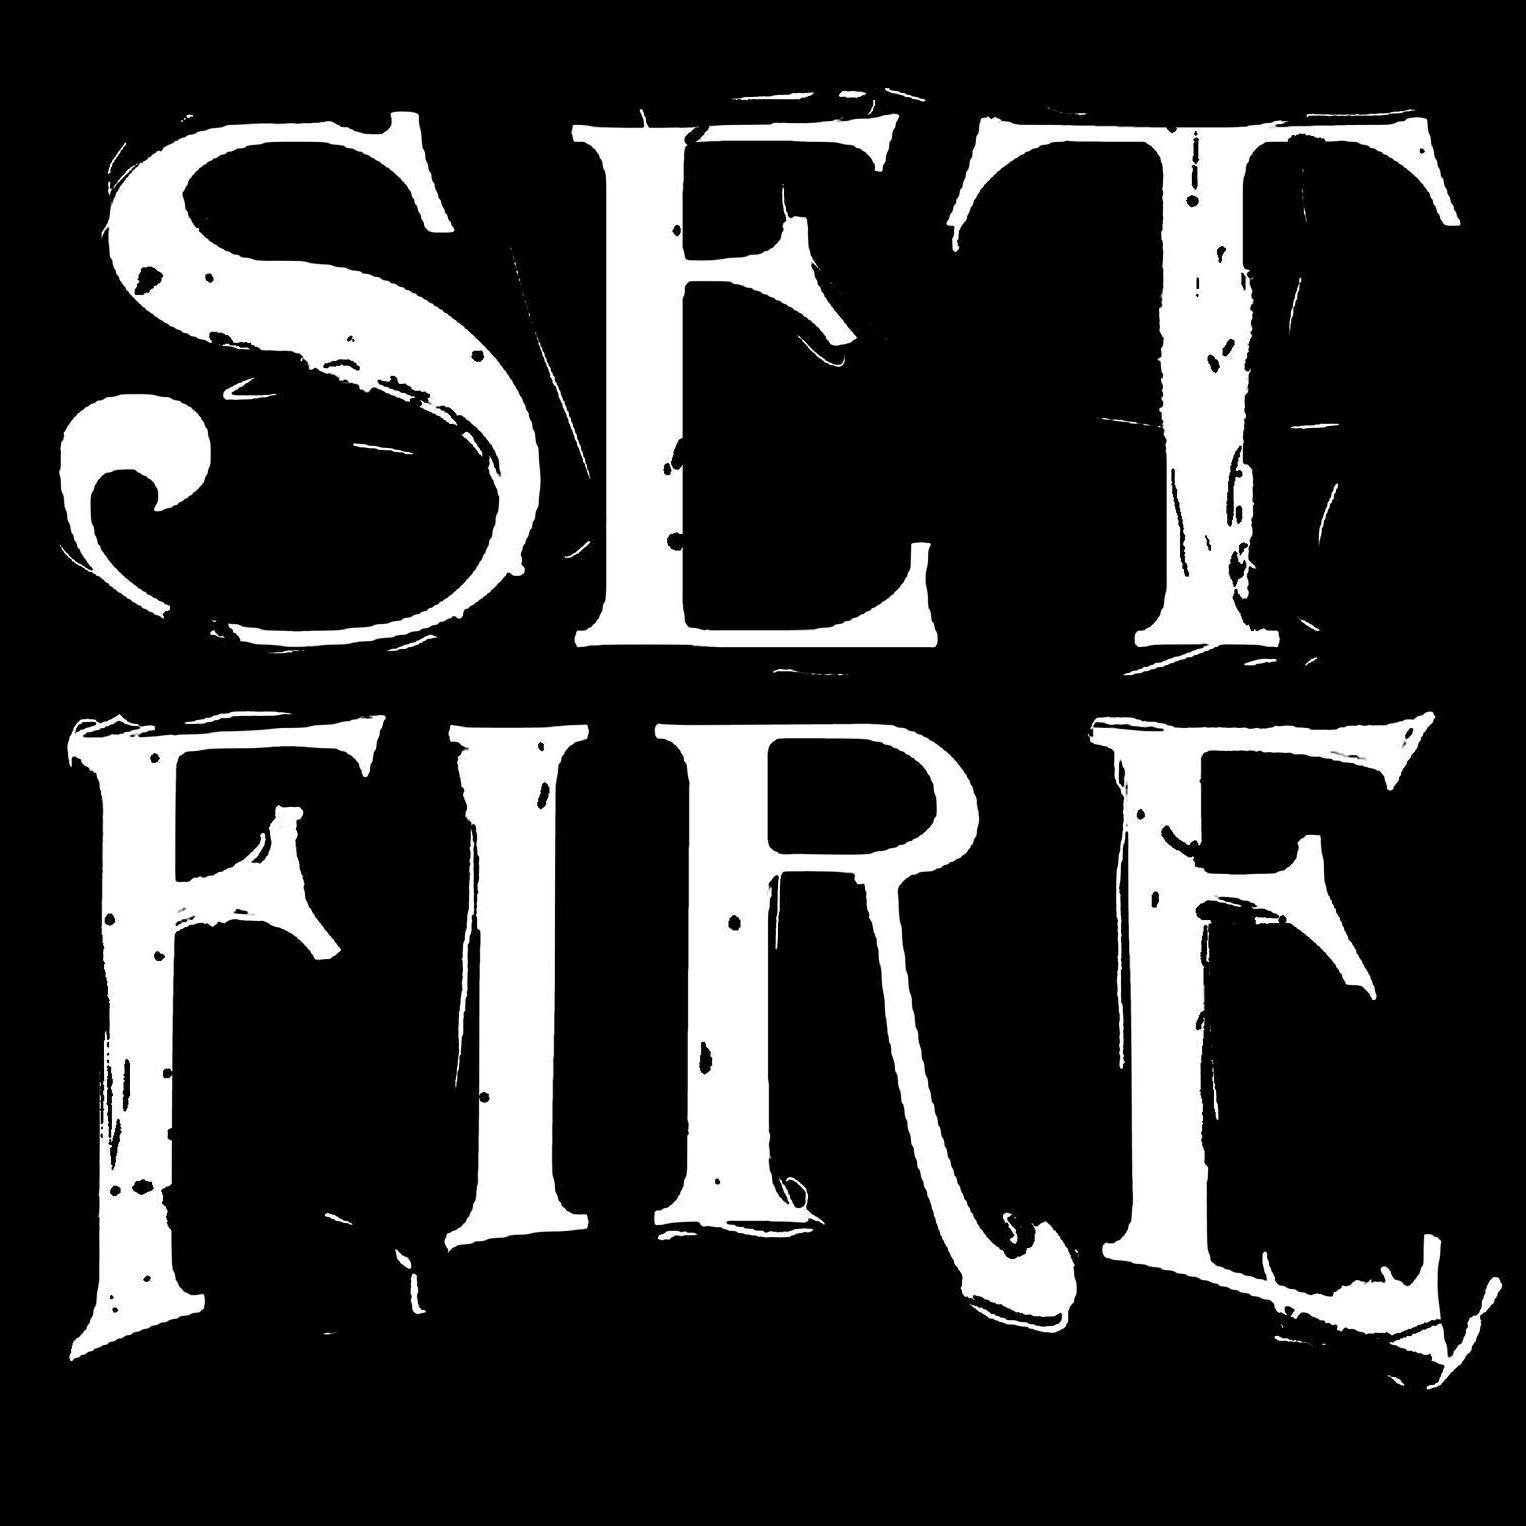 Set Fire